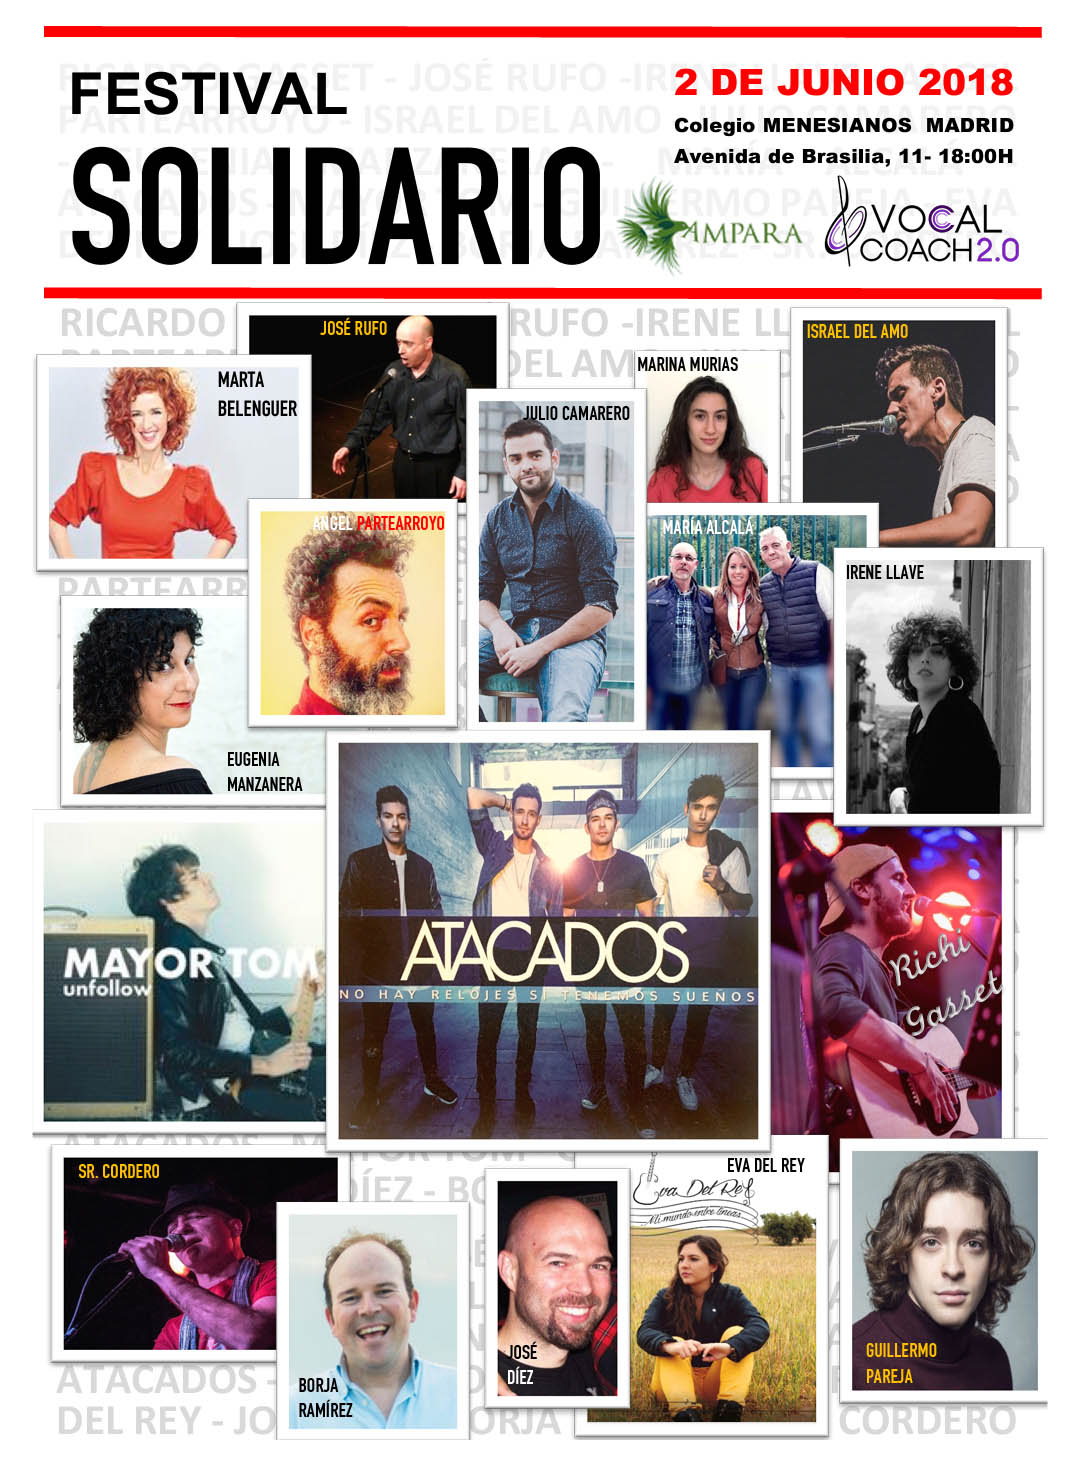 Artistas festival solidario